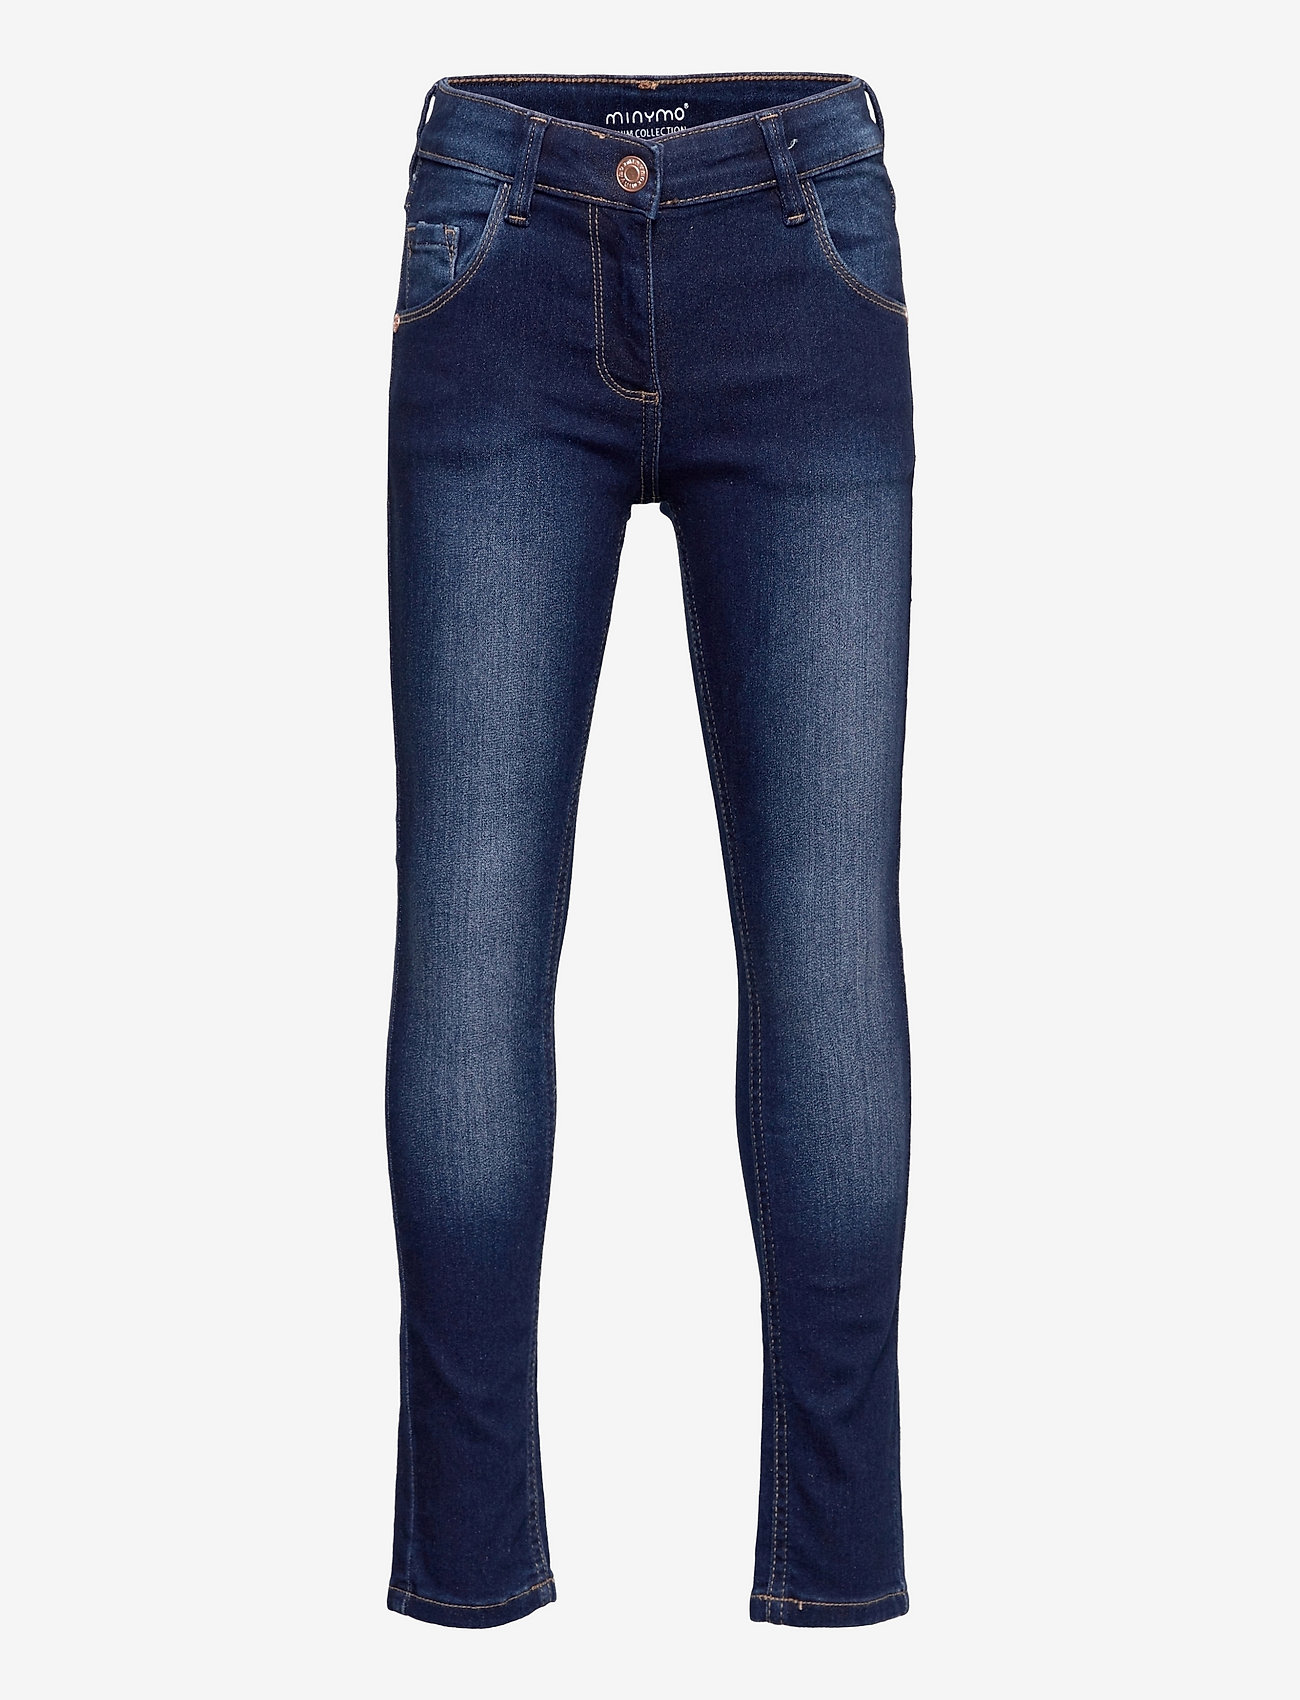 Minymo - Jeans power stretch slim fit - skinny jeans - dark blue denim - 0